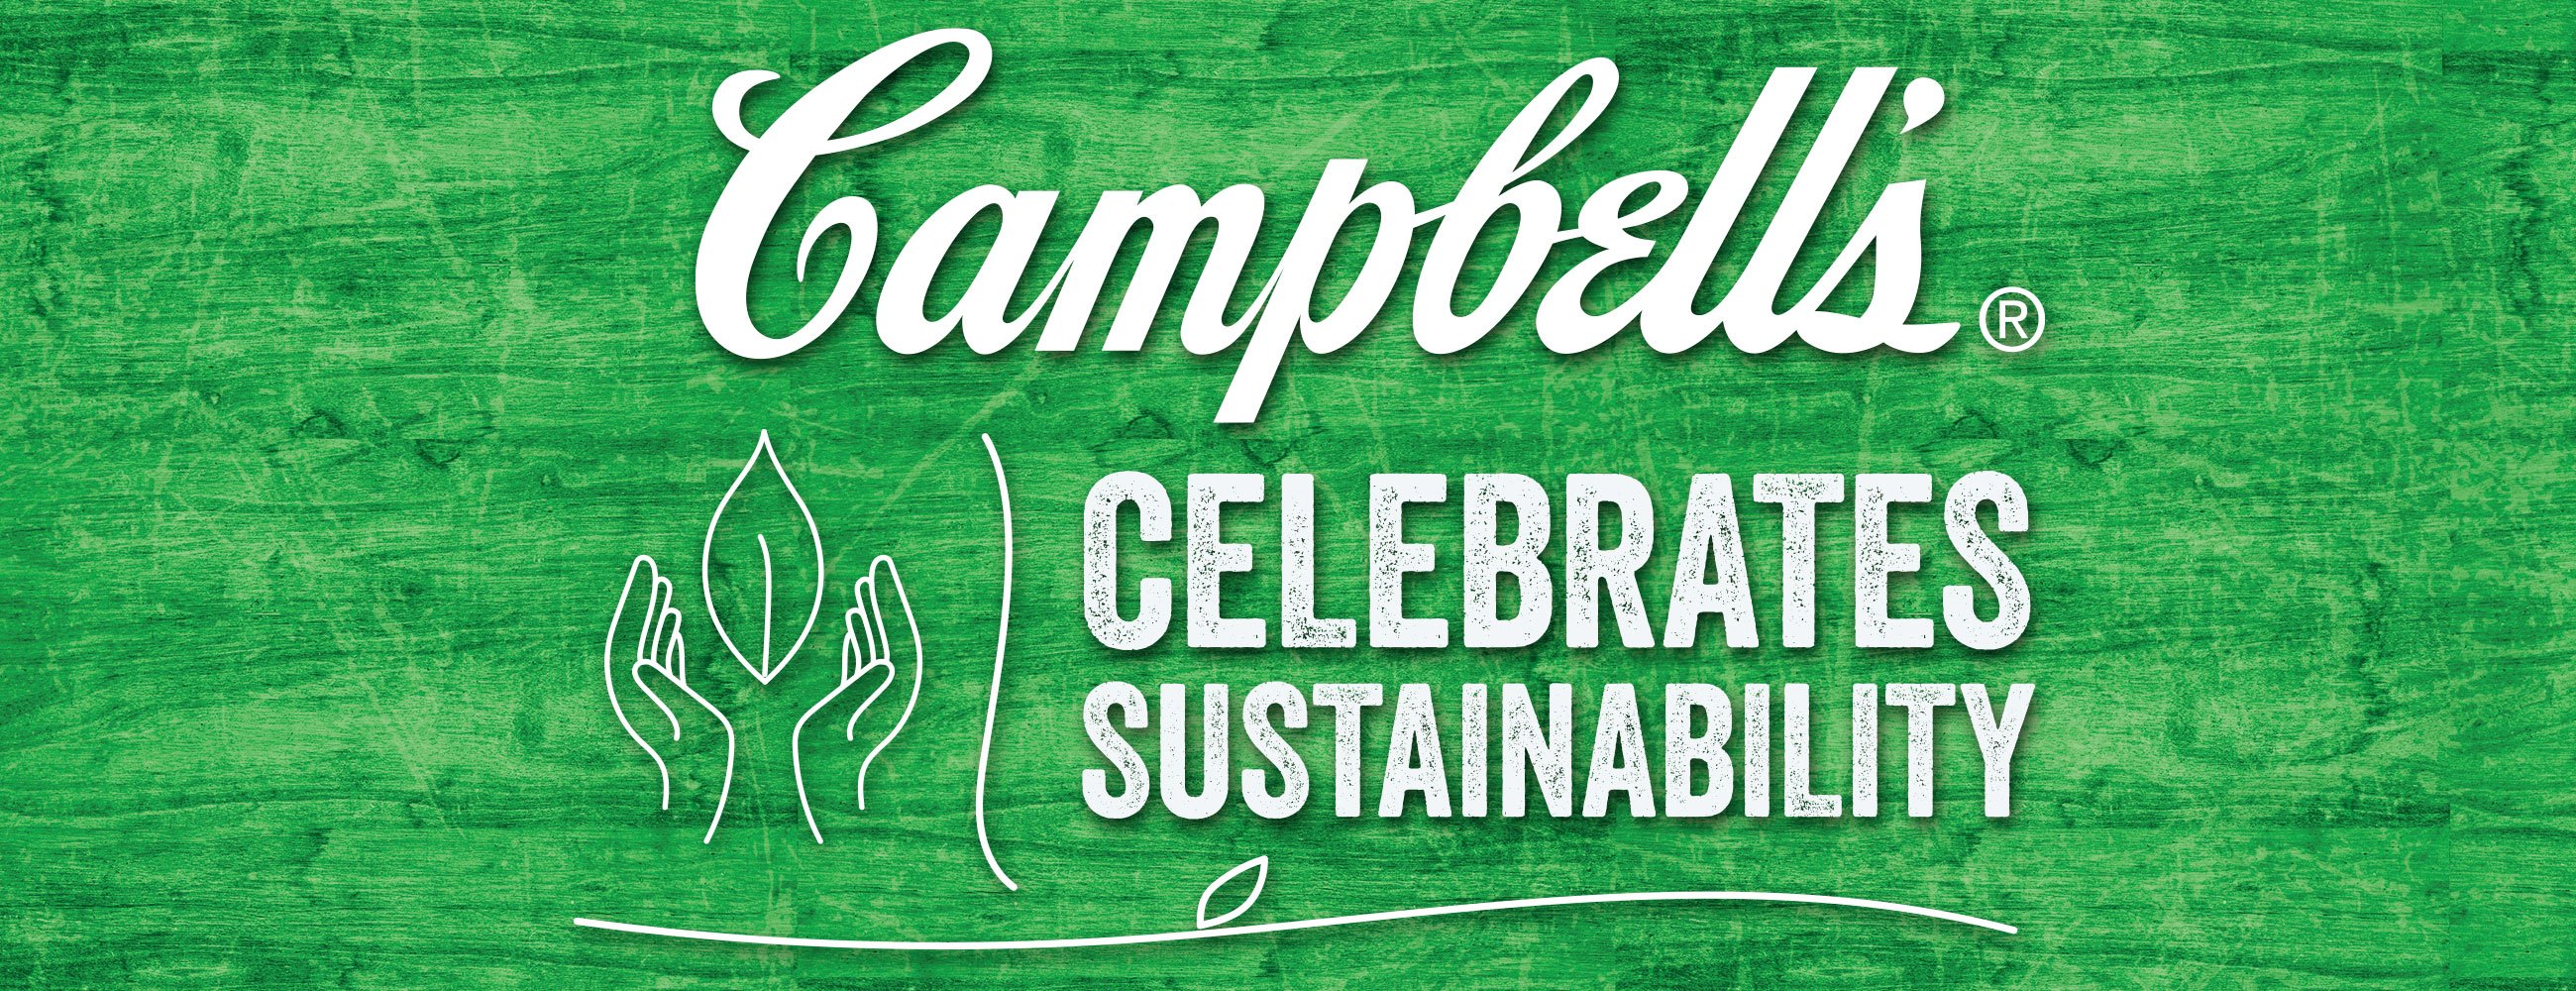 Campbell's Celebrates Sustainability